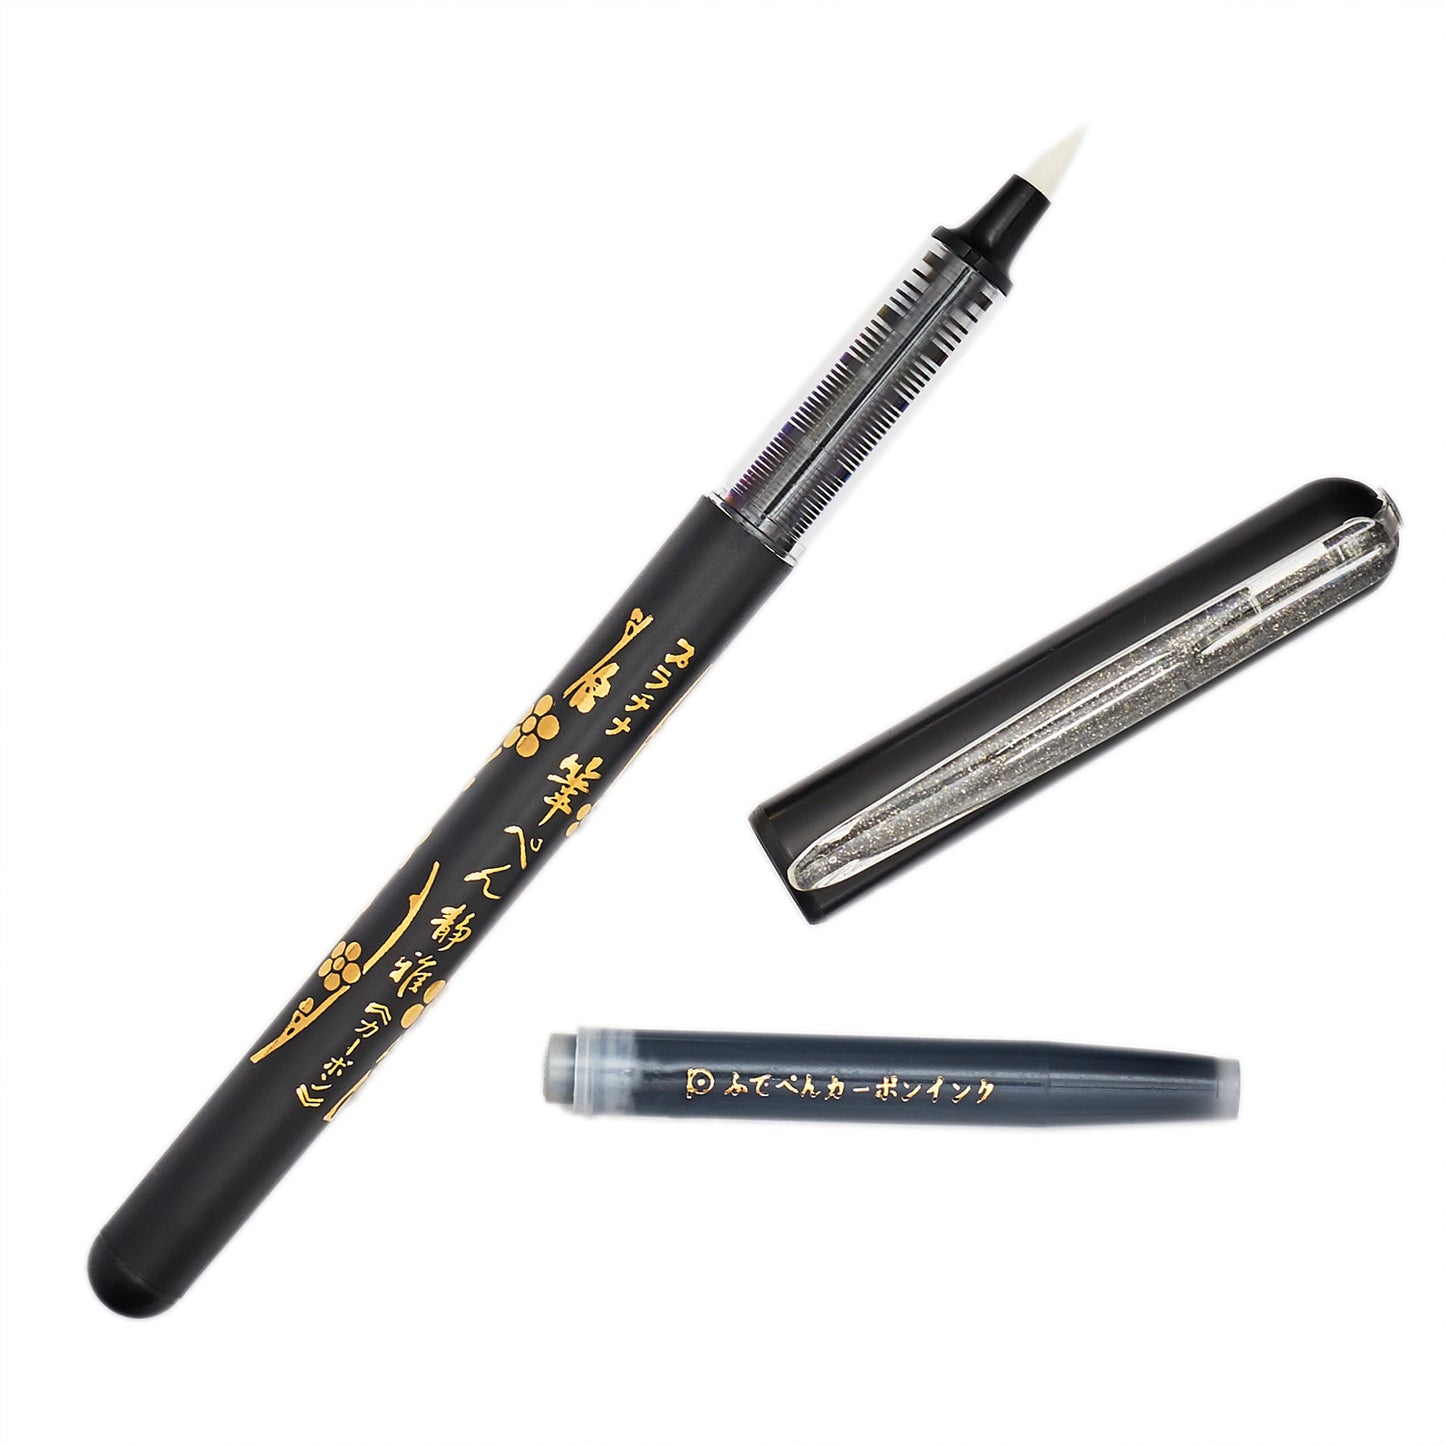 Platinum Refillable Carbon Brush Pen uncapped with cartridge